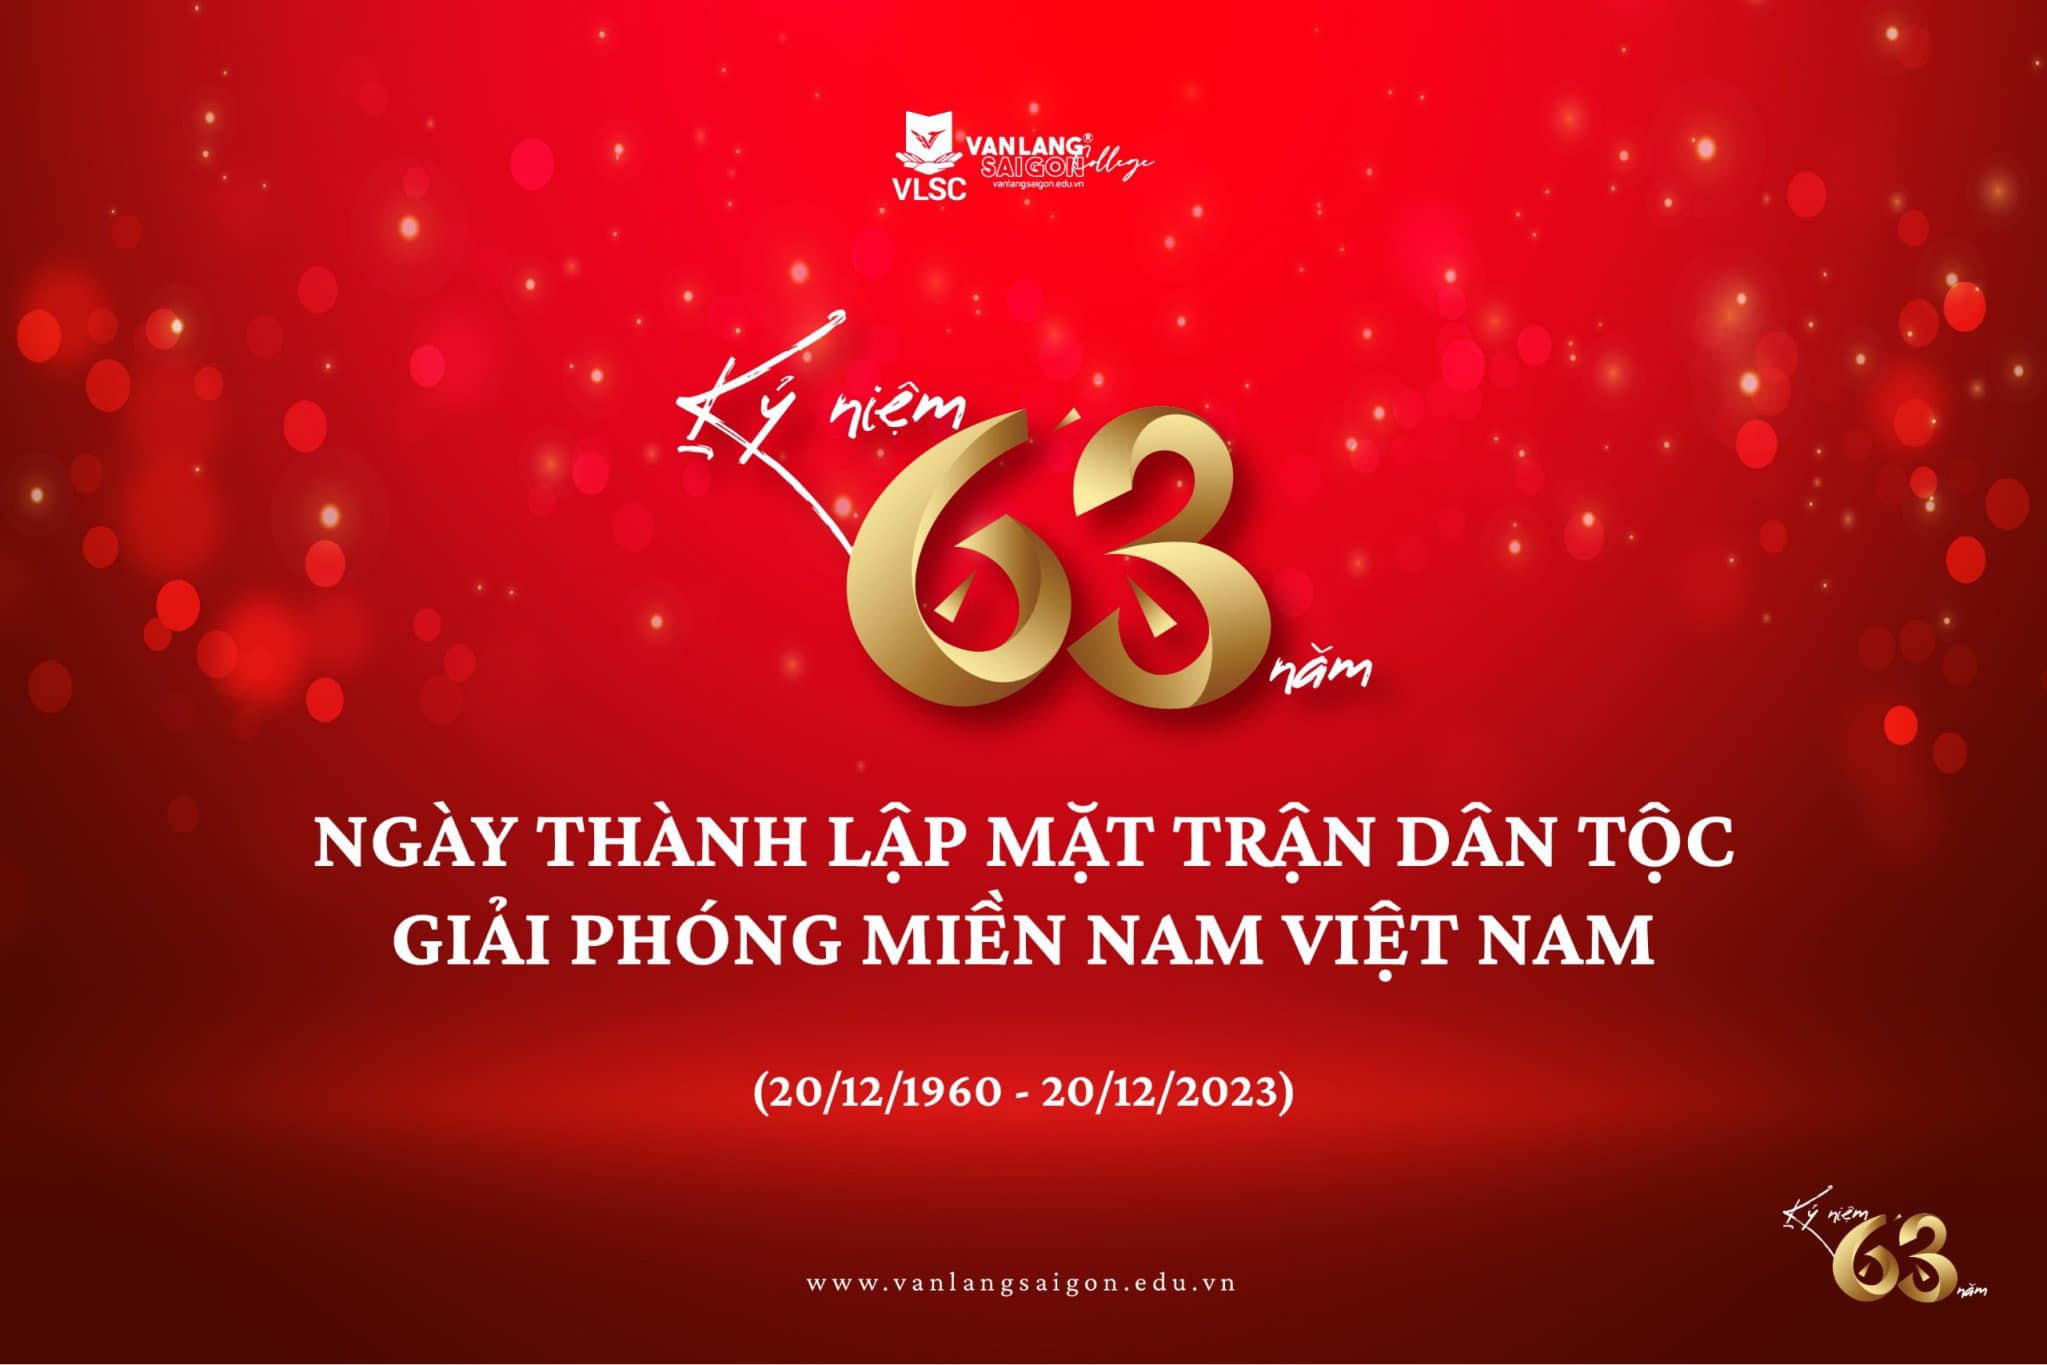 Chào mừng kỷ niệm 63 năm Ngày thành lập Mặt trận Dân tộc Giải phóng miền Nam Việt Nam (20/12/1960 - 20/12/2023)